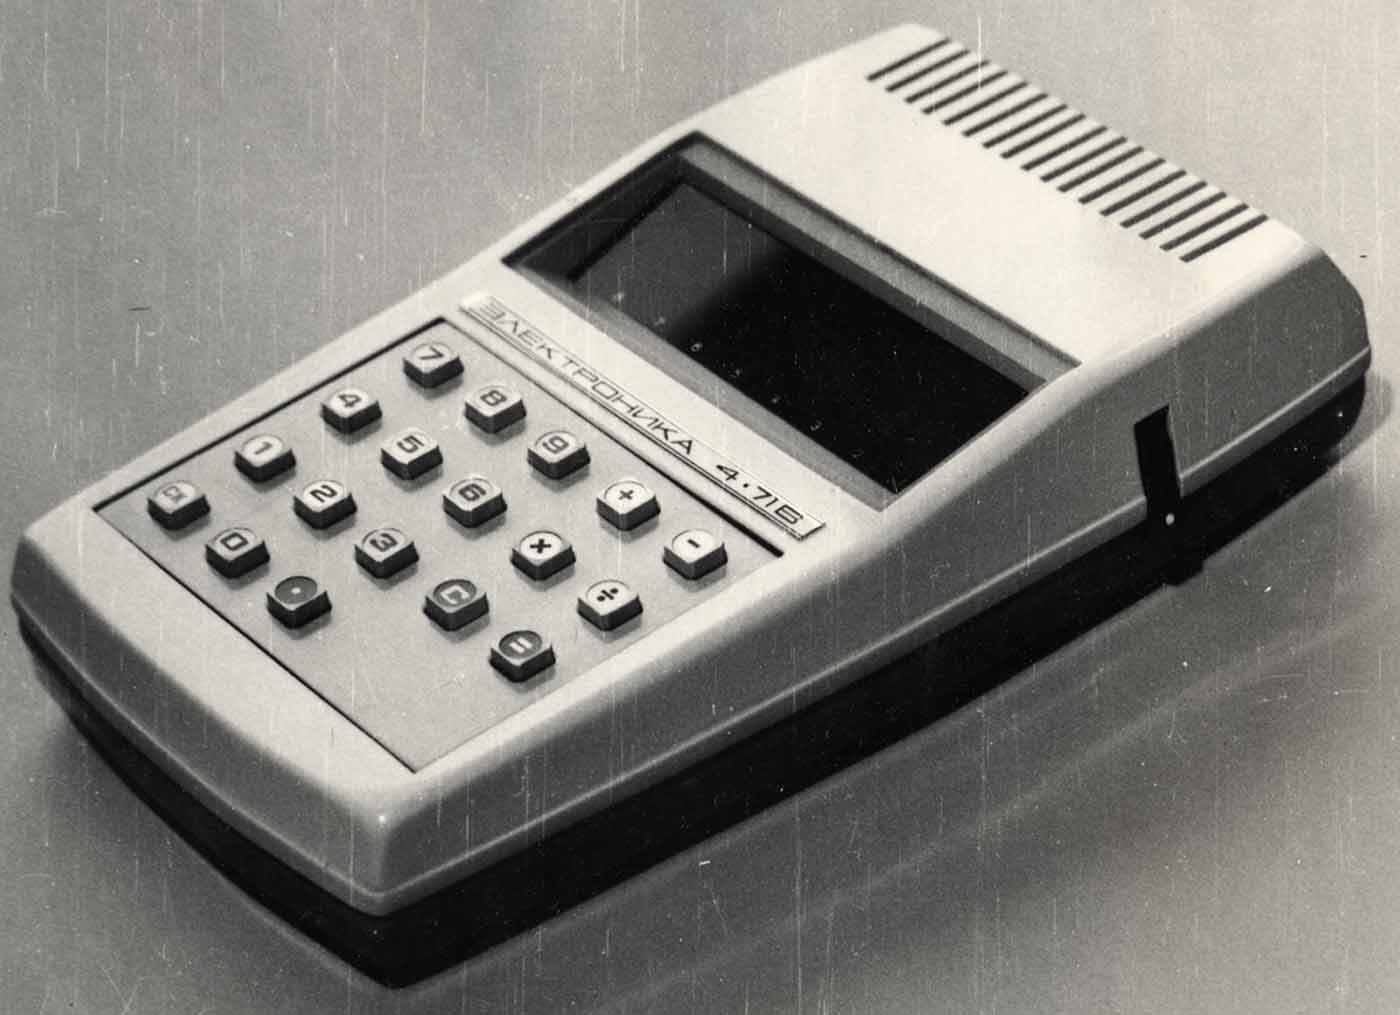 Первый в Европе микрокалькулятор, разработанный в НИИ "Микроприбор". 1970 г